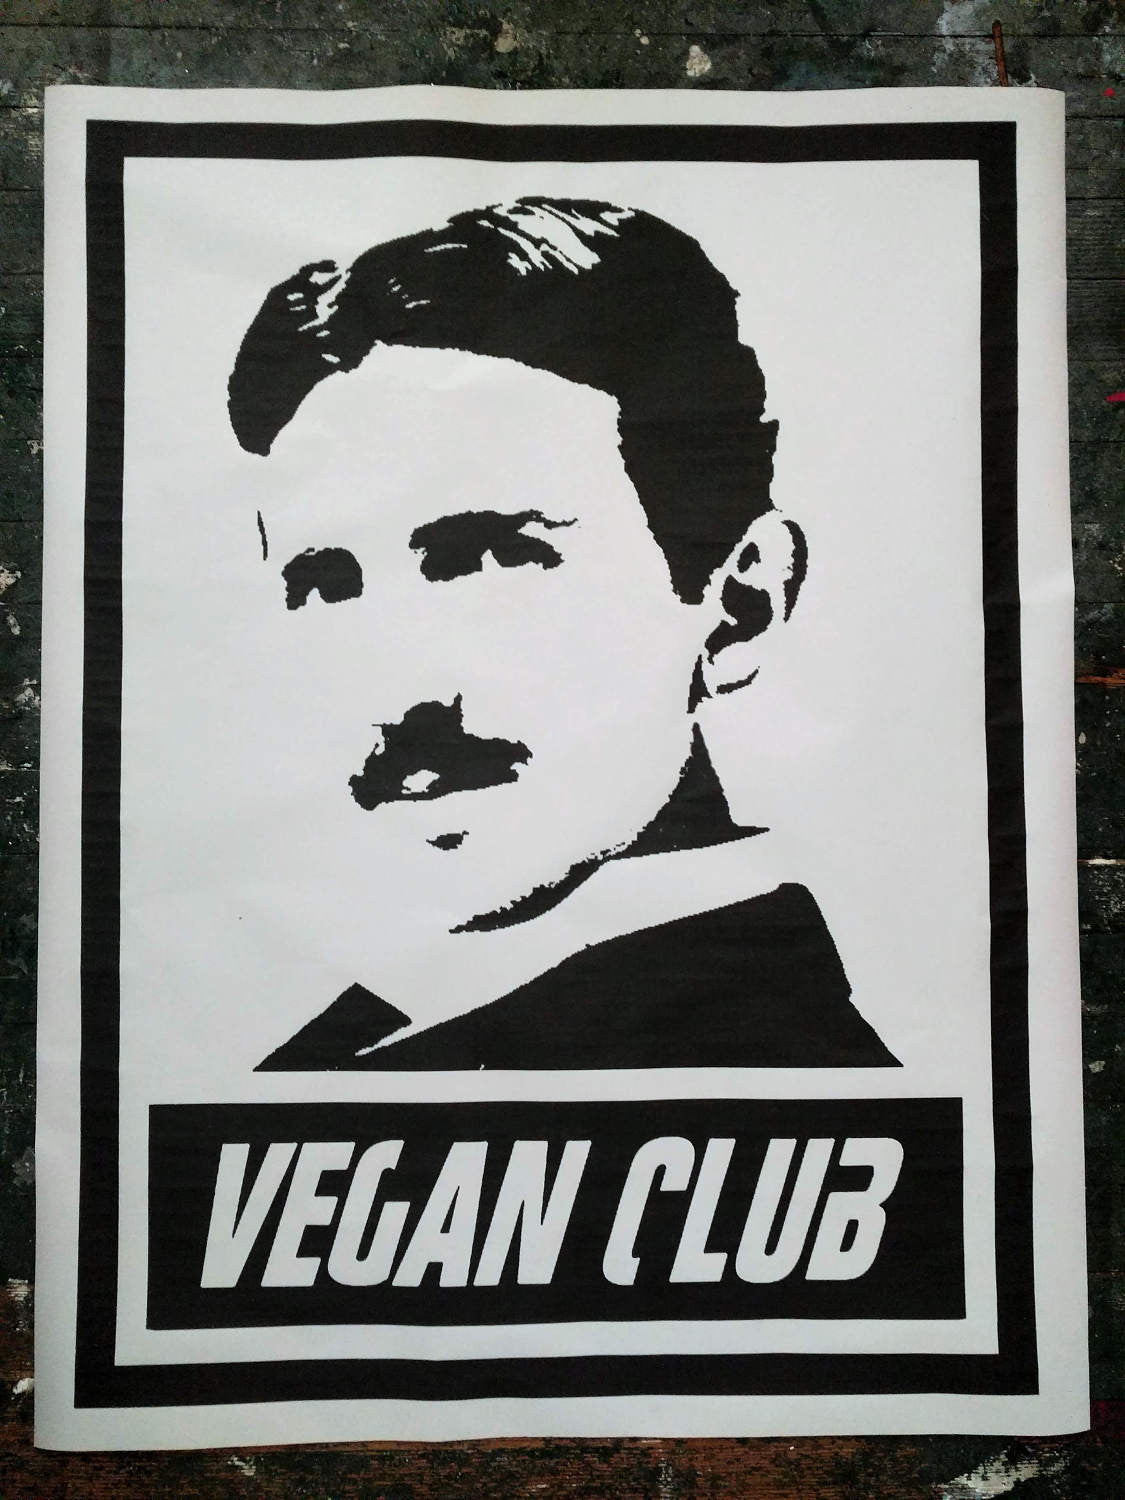 Street Art NewsPrint Poster Vegan Club Tesla signed L3F0u